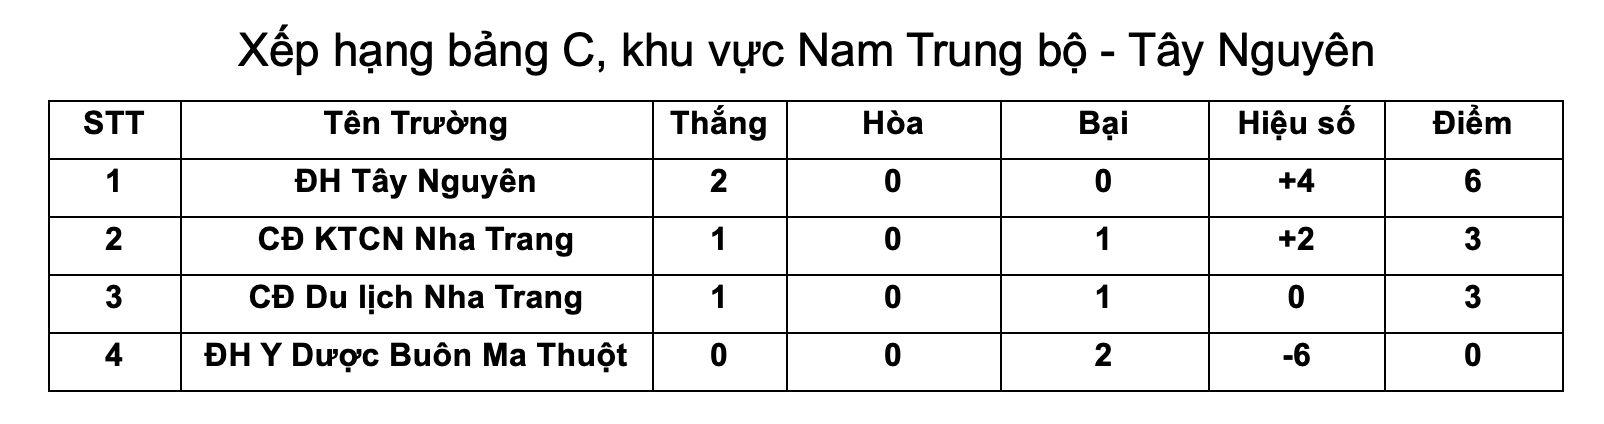 ĐH Tây Nguyên vs CĐ Du lịch Nha Trang: Cháy hết mình vì giấc mơ VCK - Ảnh 3.